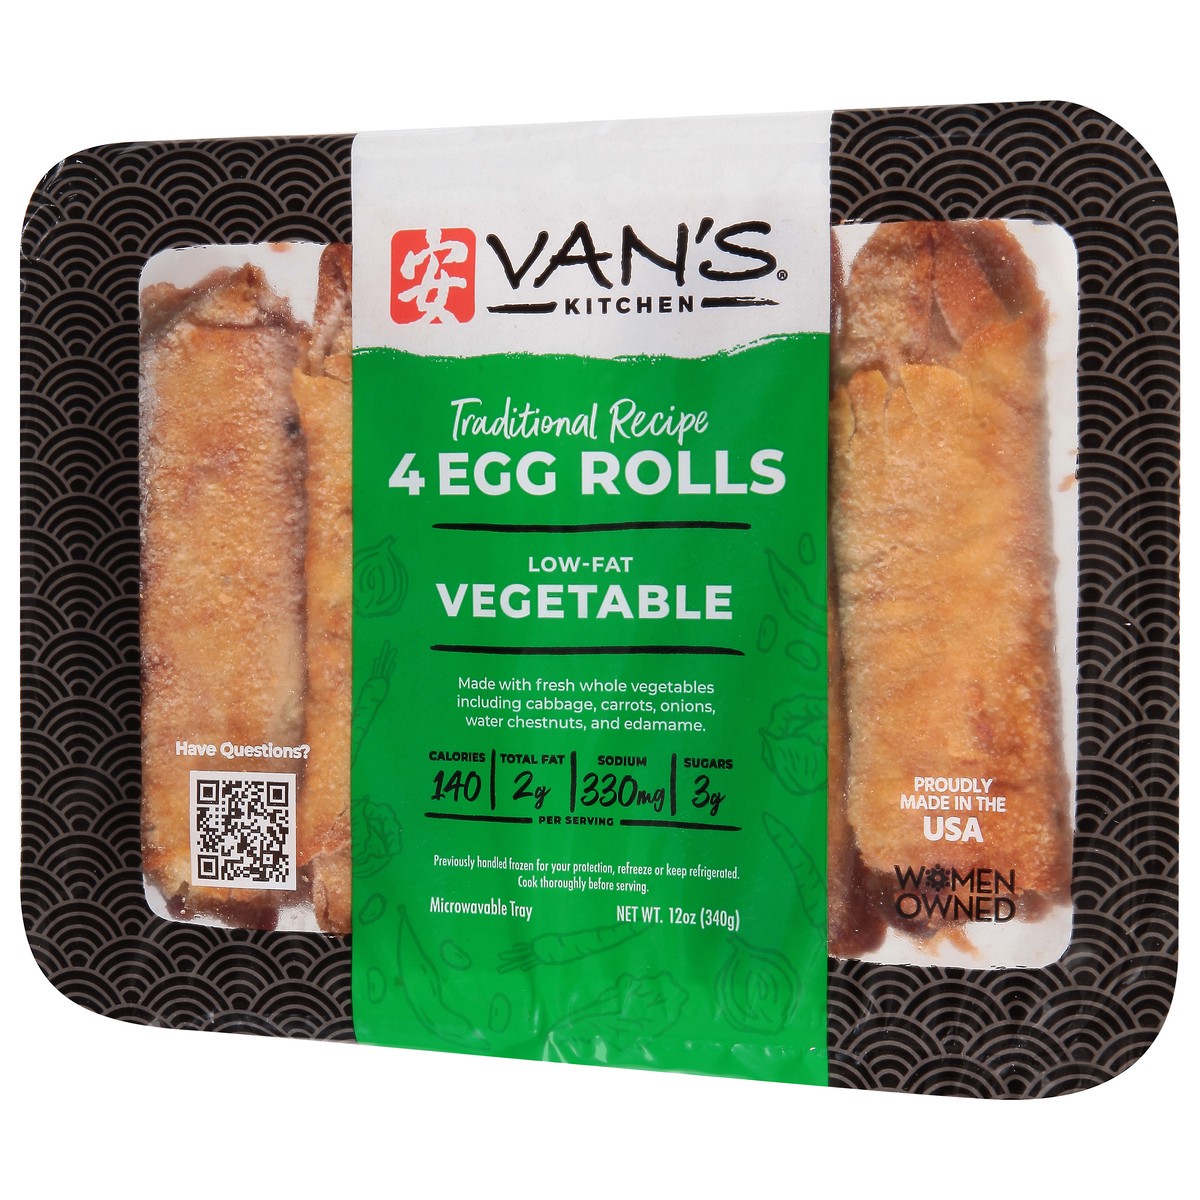 slide 3 of 9, Van's Vans Vegetable Egg Rolls 4Ct, 13.75 oz